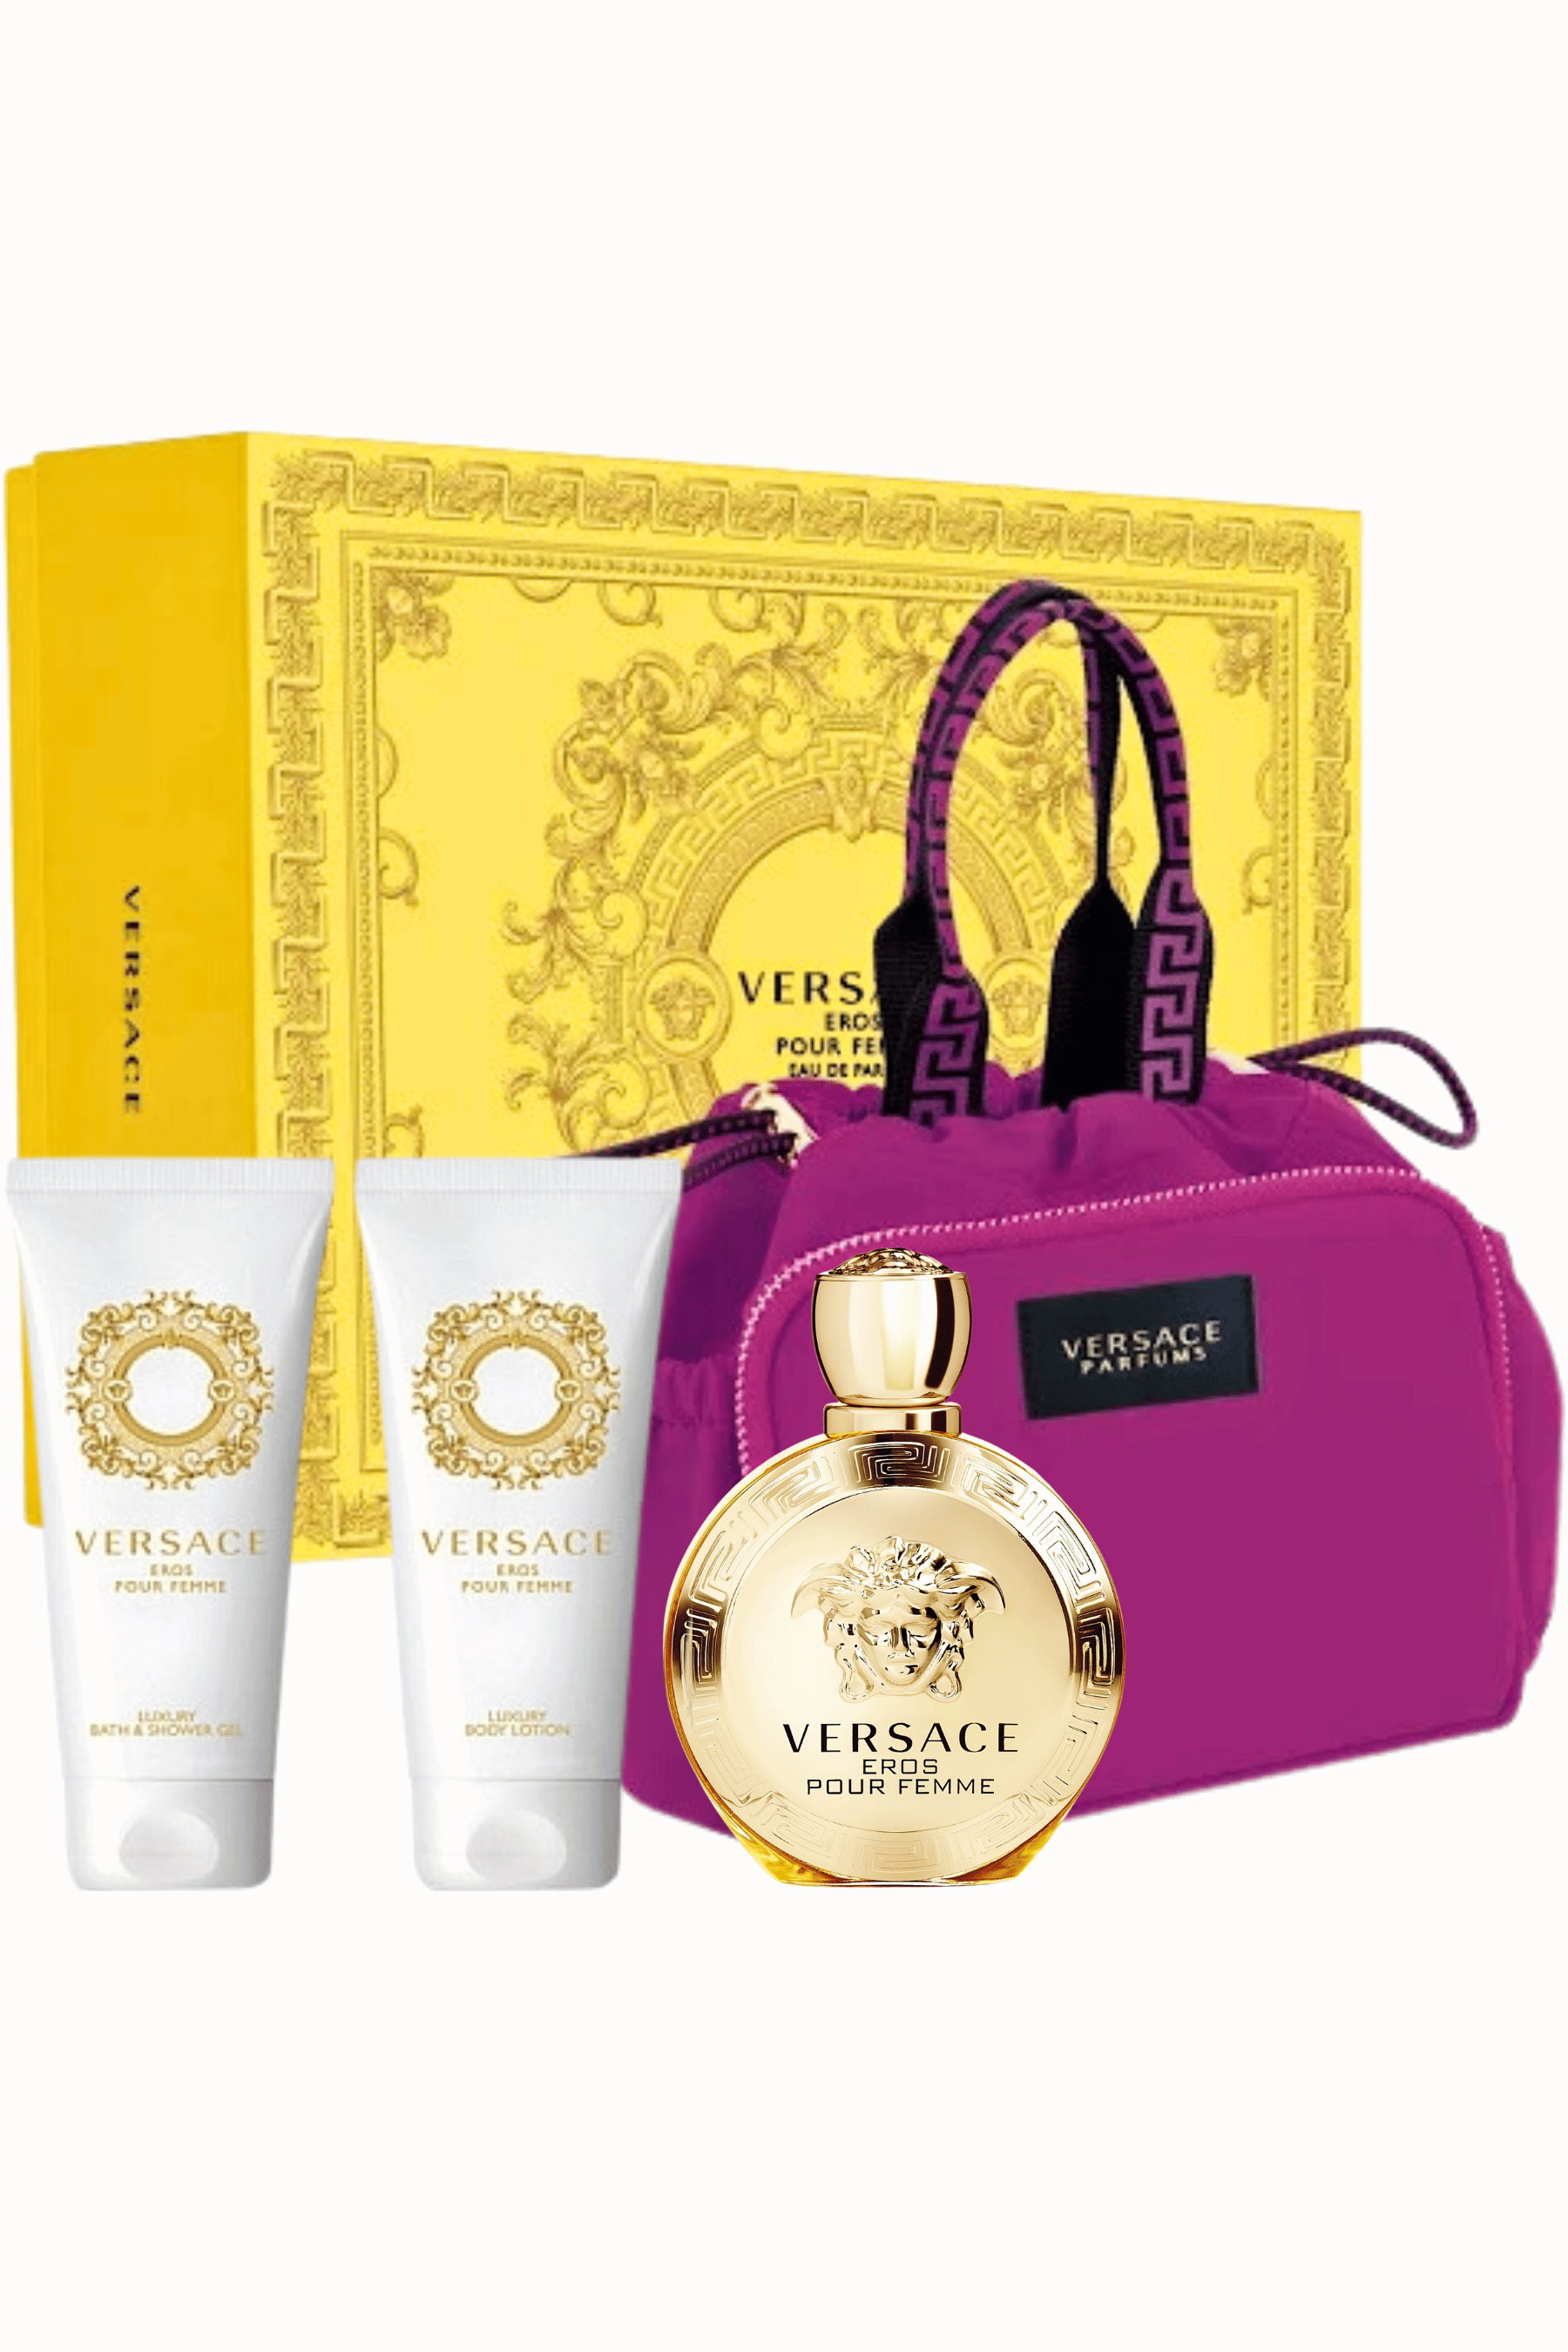 Versace | Eros Pour Femme Eau de Parfum 4pc Gift Set - REBL